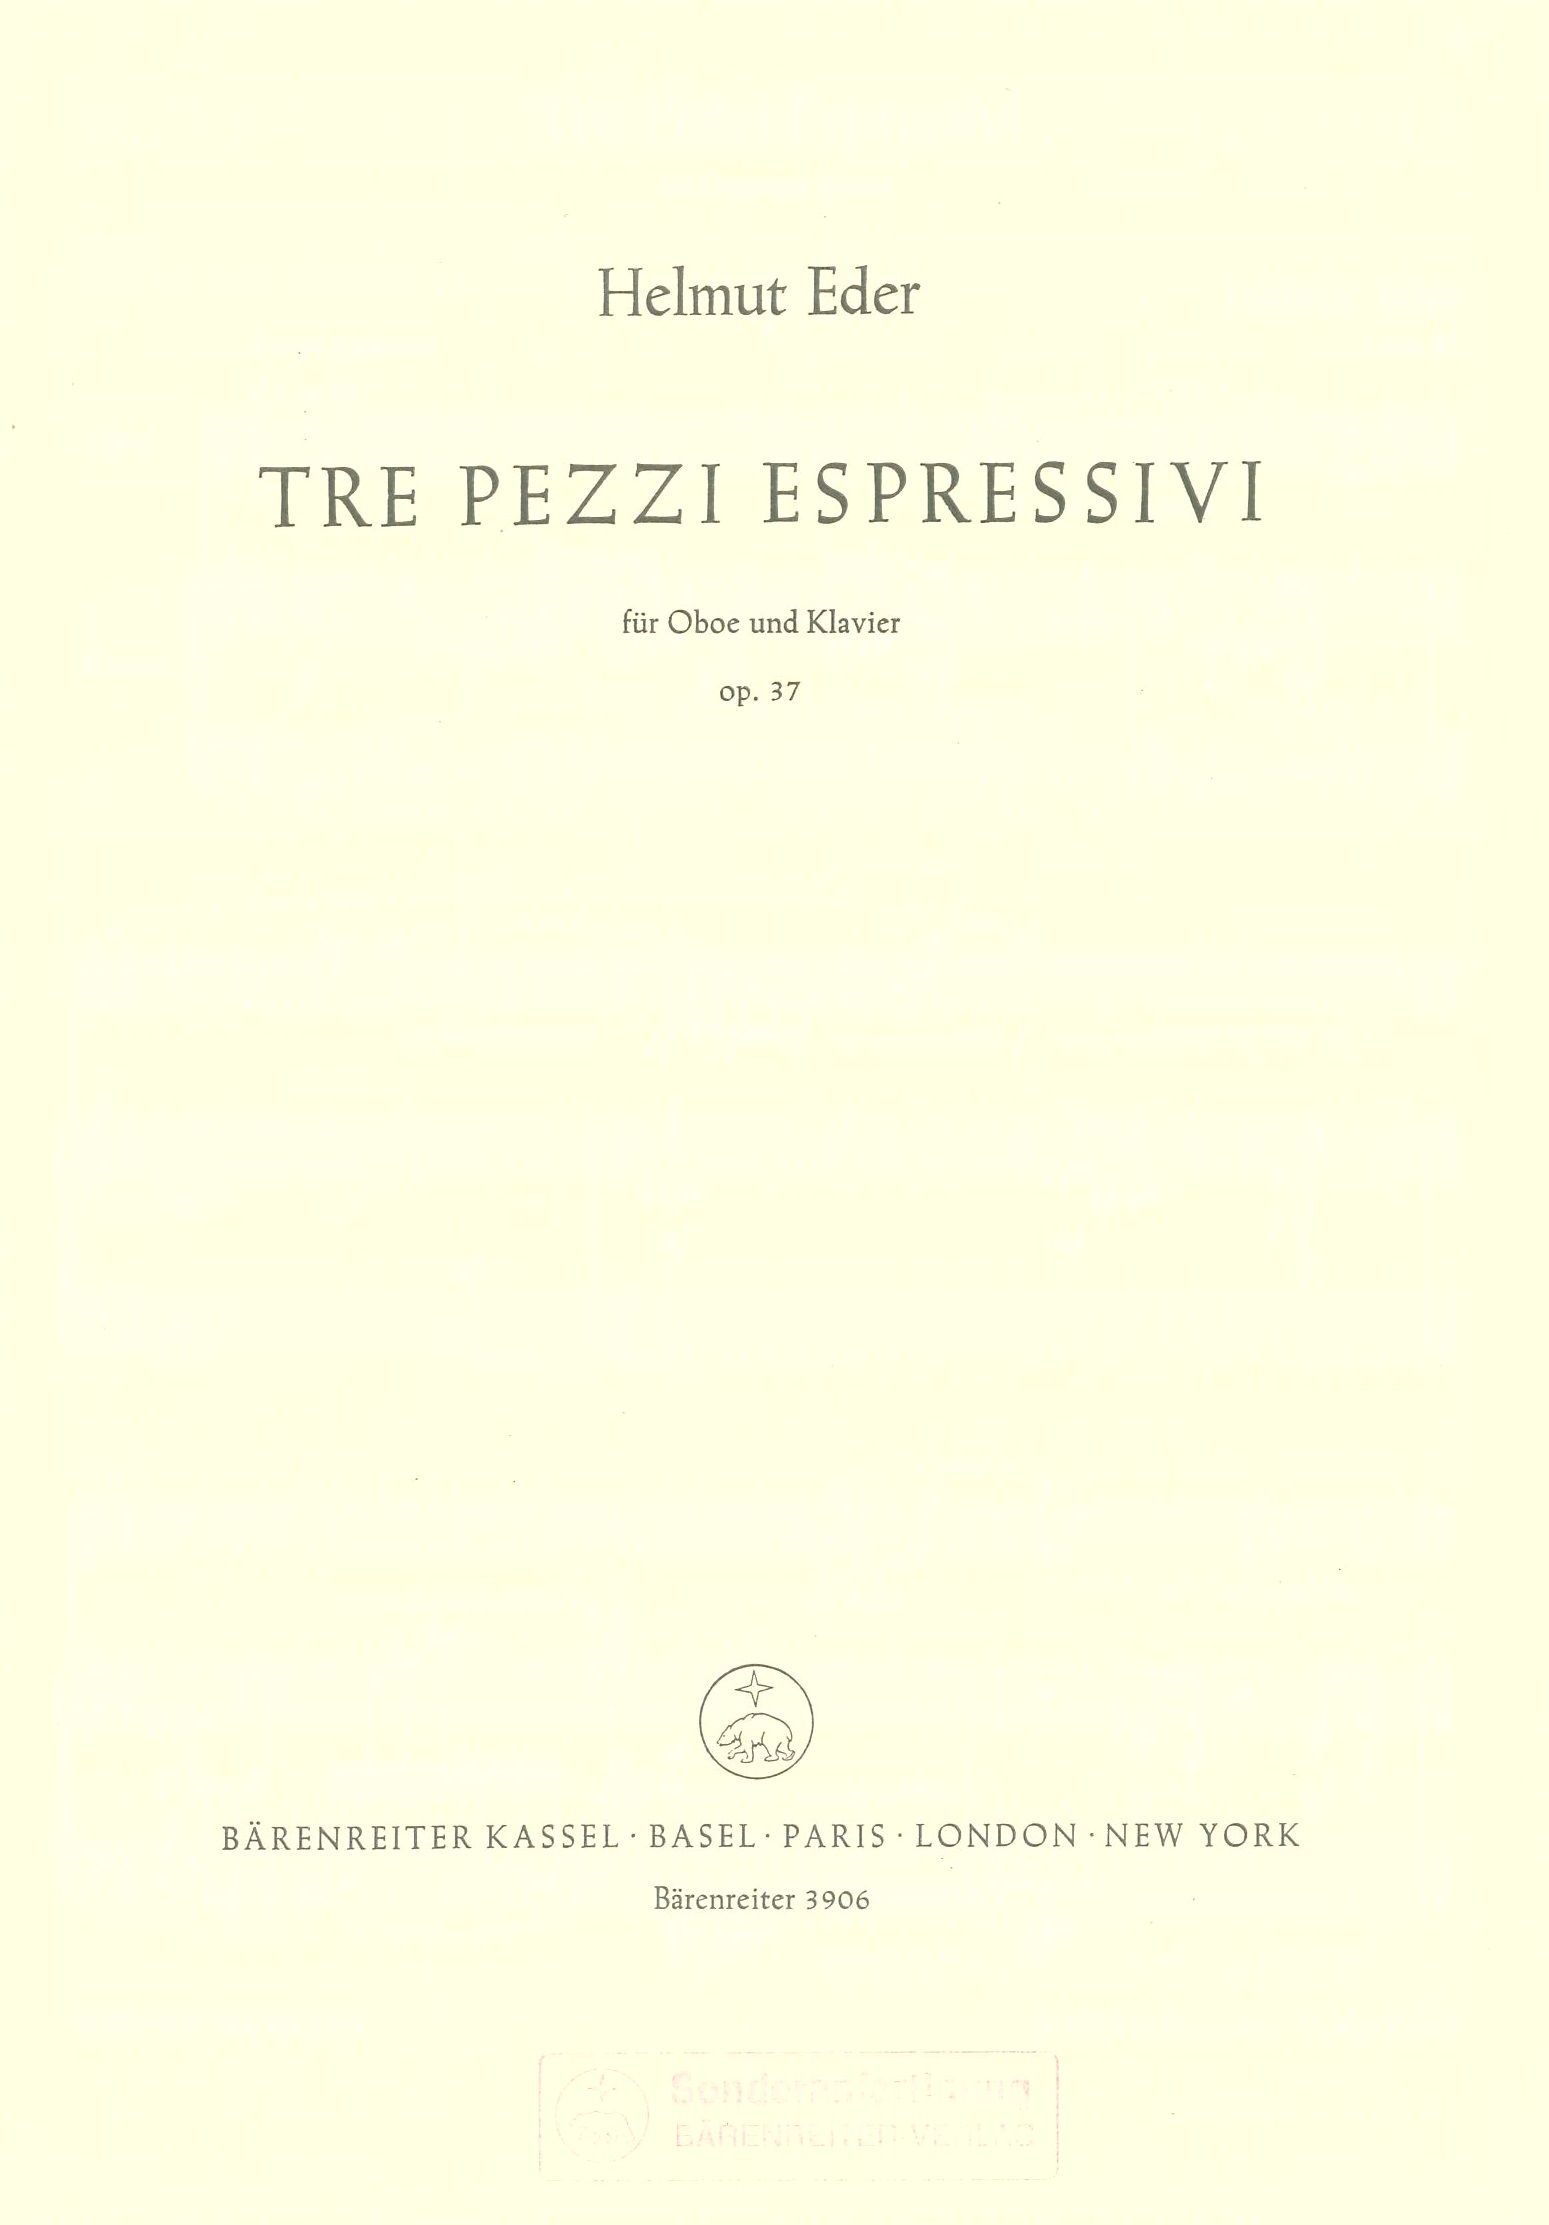 H. Eder: Tre Pezzi Espressivi op. 37<br>Oboe + Klavier